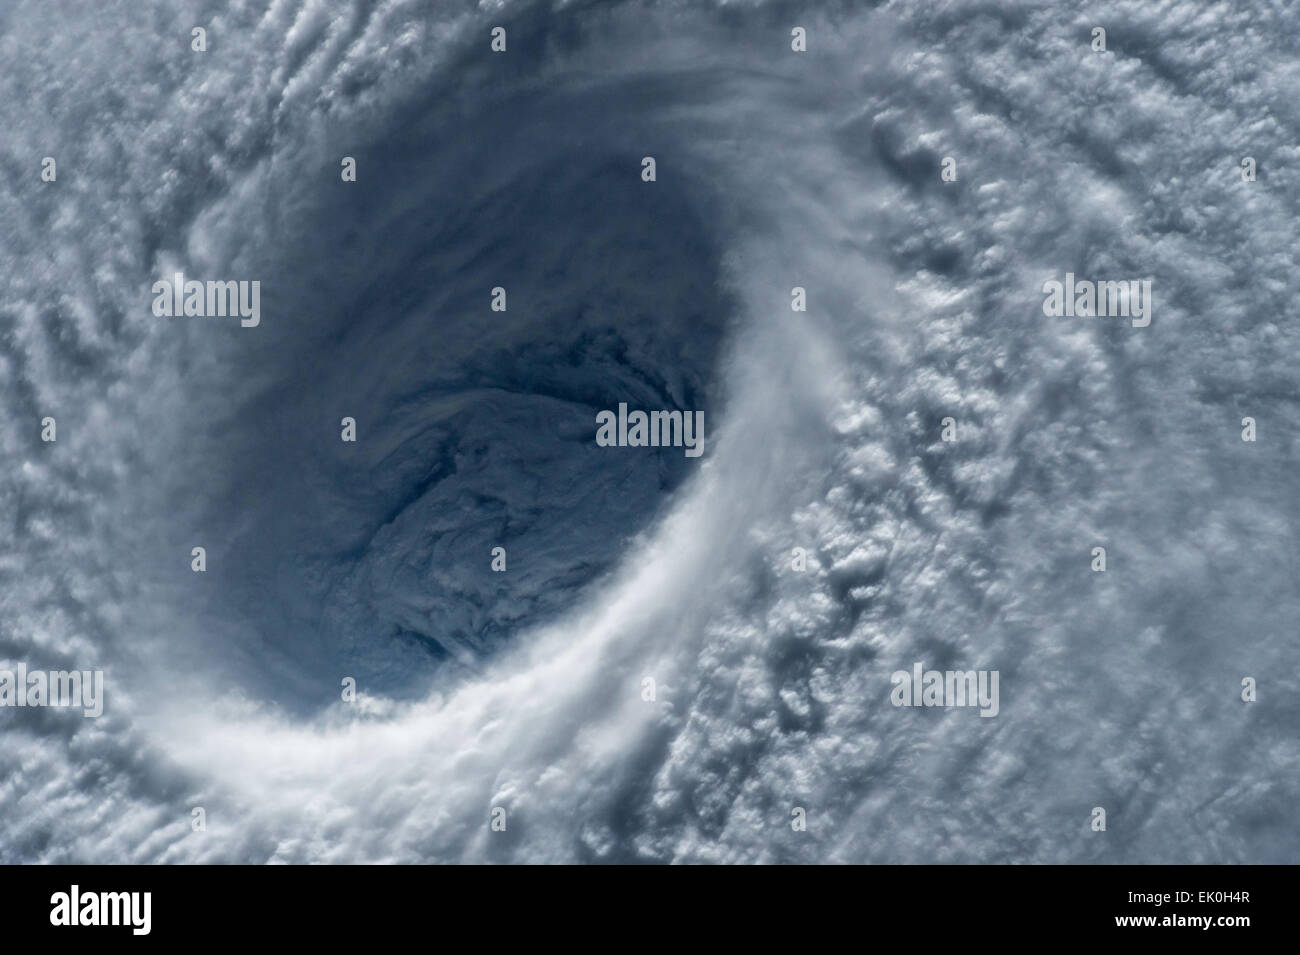 Zeigen Sie es nähert sich der philippinischen Inseln 31. März 2015 aus der internationalen Raumstation ISS des massiven Kategorie 5 Taifun Maysak Auges an. Die Super Typhoon soll auf das bevorstehende Osterwochenende zu landen. Stockfoto